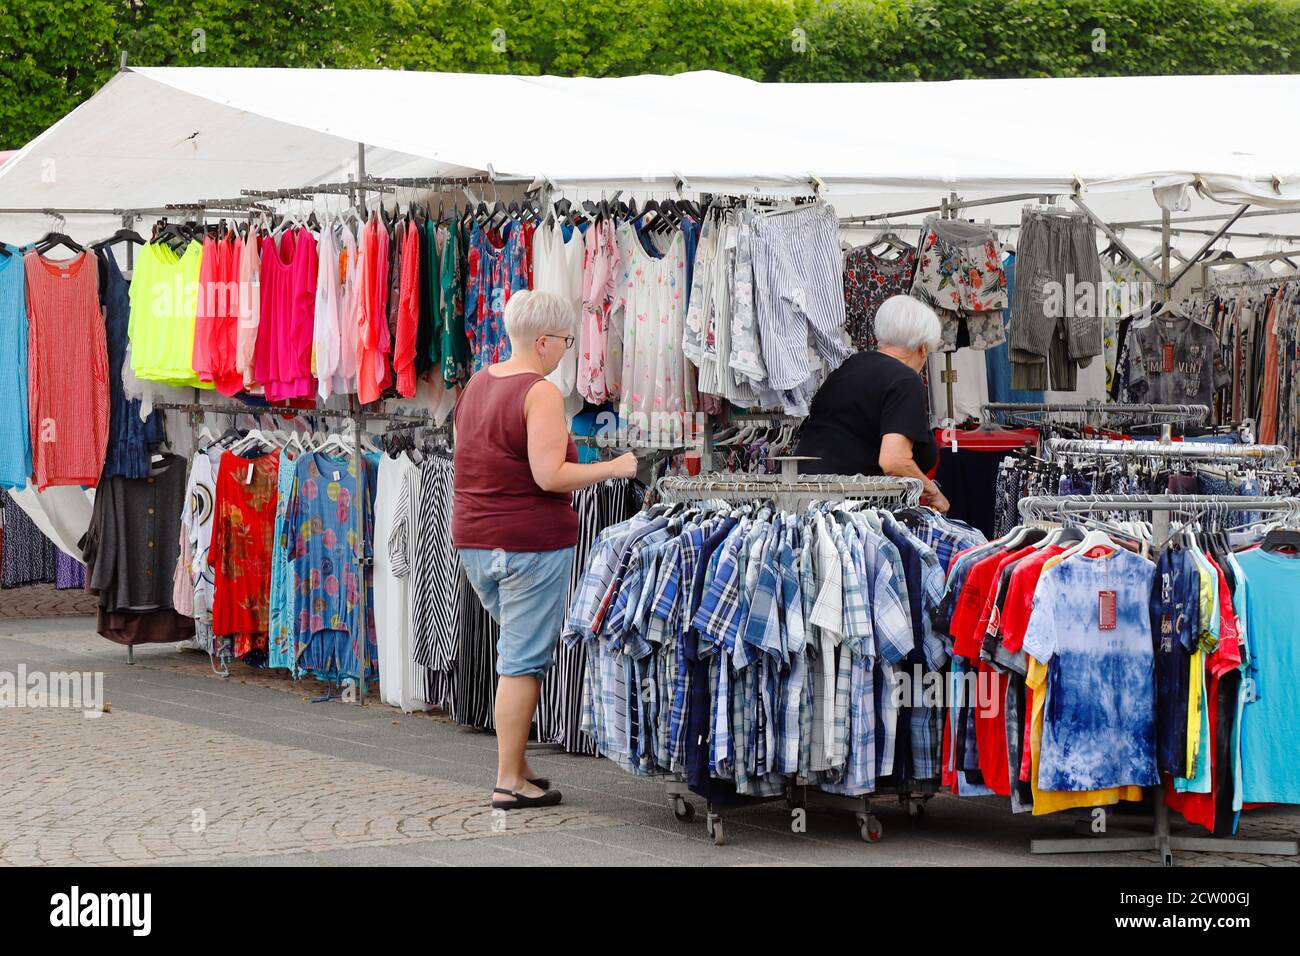 Lidkoping, Svezia - 24 giugno 2020: Due donne presso le bancarelle del mercato che vendono vestiti sulla piazza della città. Foto Stock